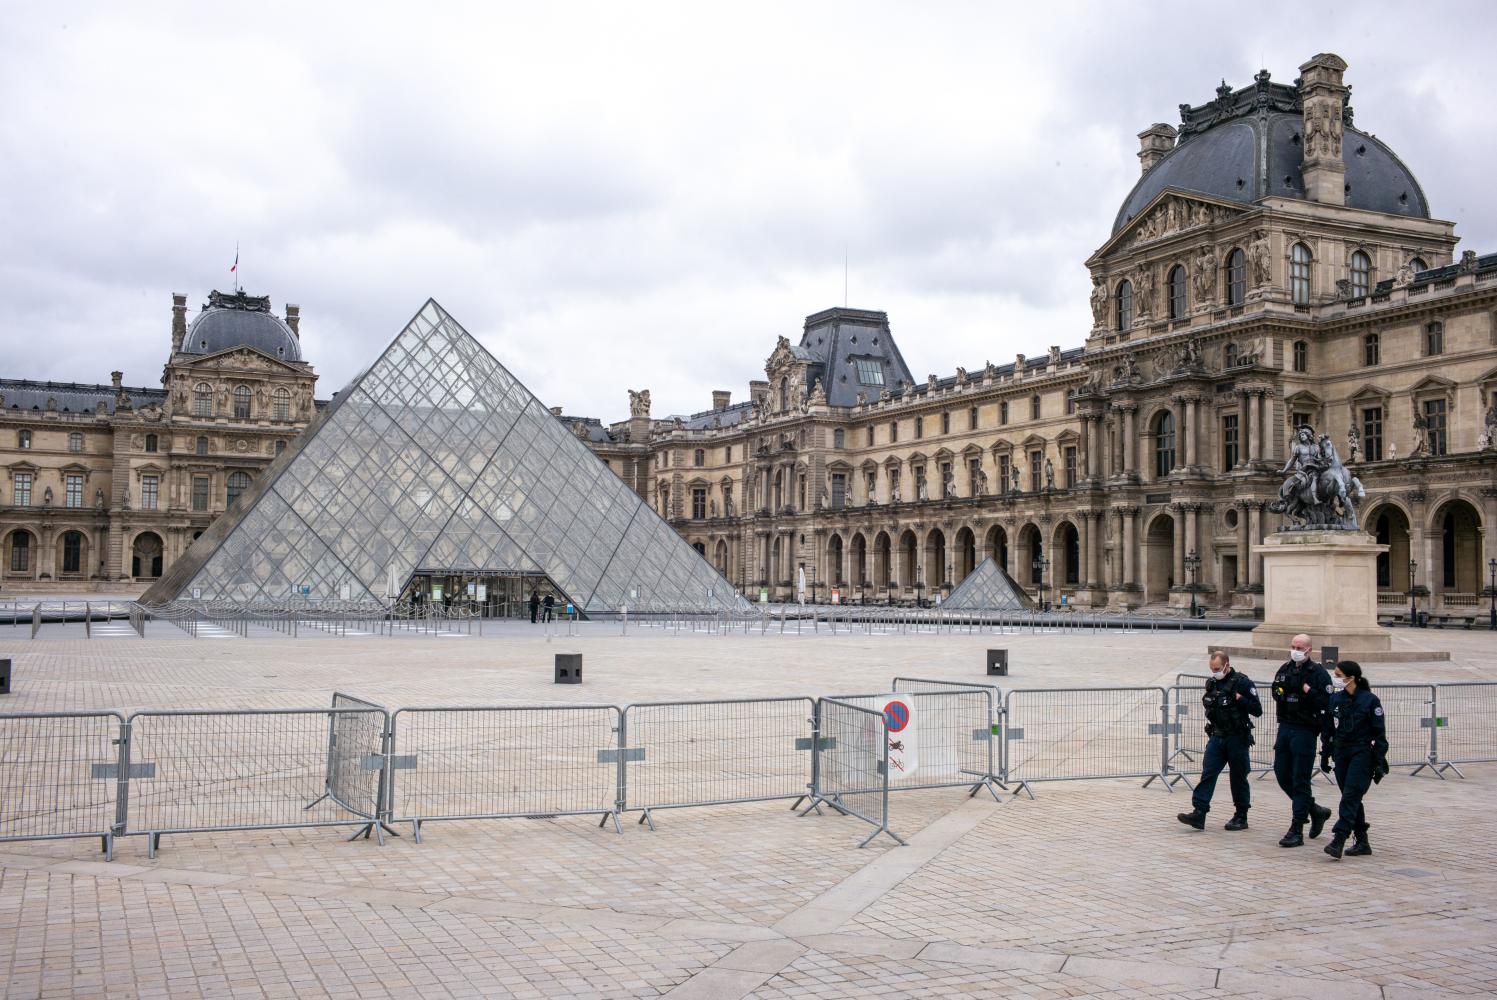 Der Louvre in Paris